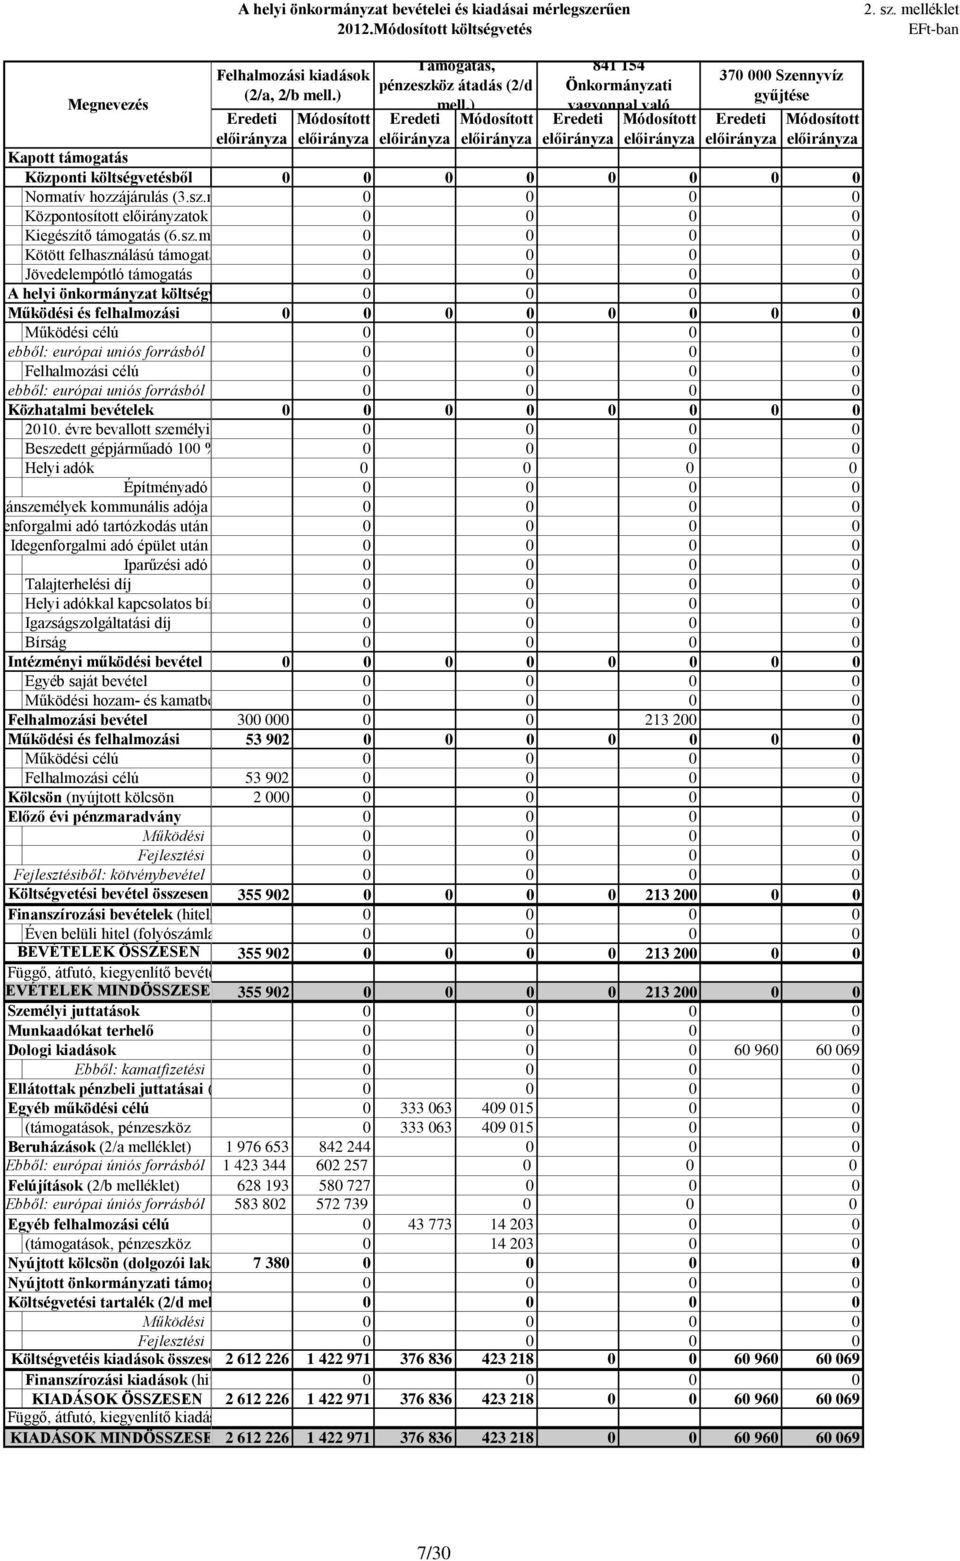 ) Támogatás, pénzeszköz átadás (2/d mell.) 841 154 Önkormányzati vagyonnal való 37 Szennyvíz gyűjtése 21.